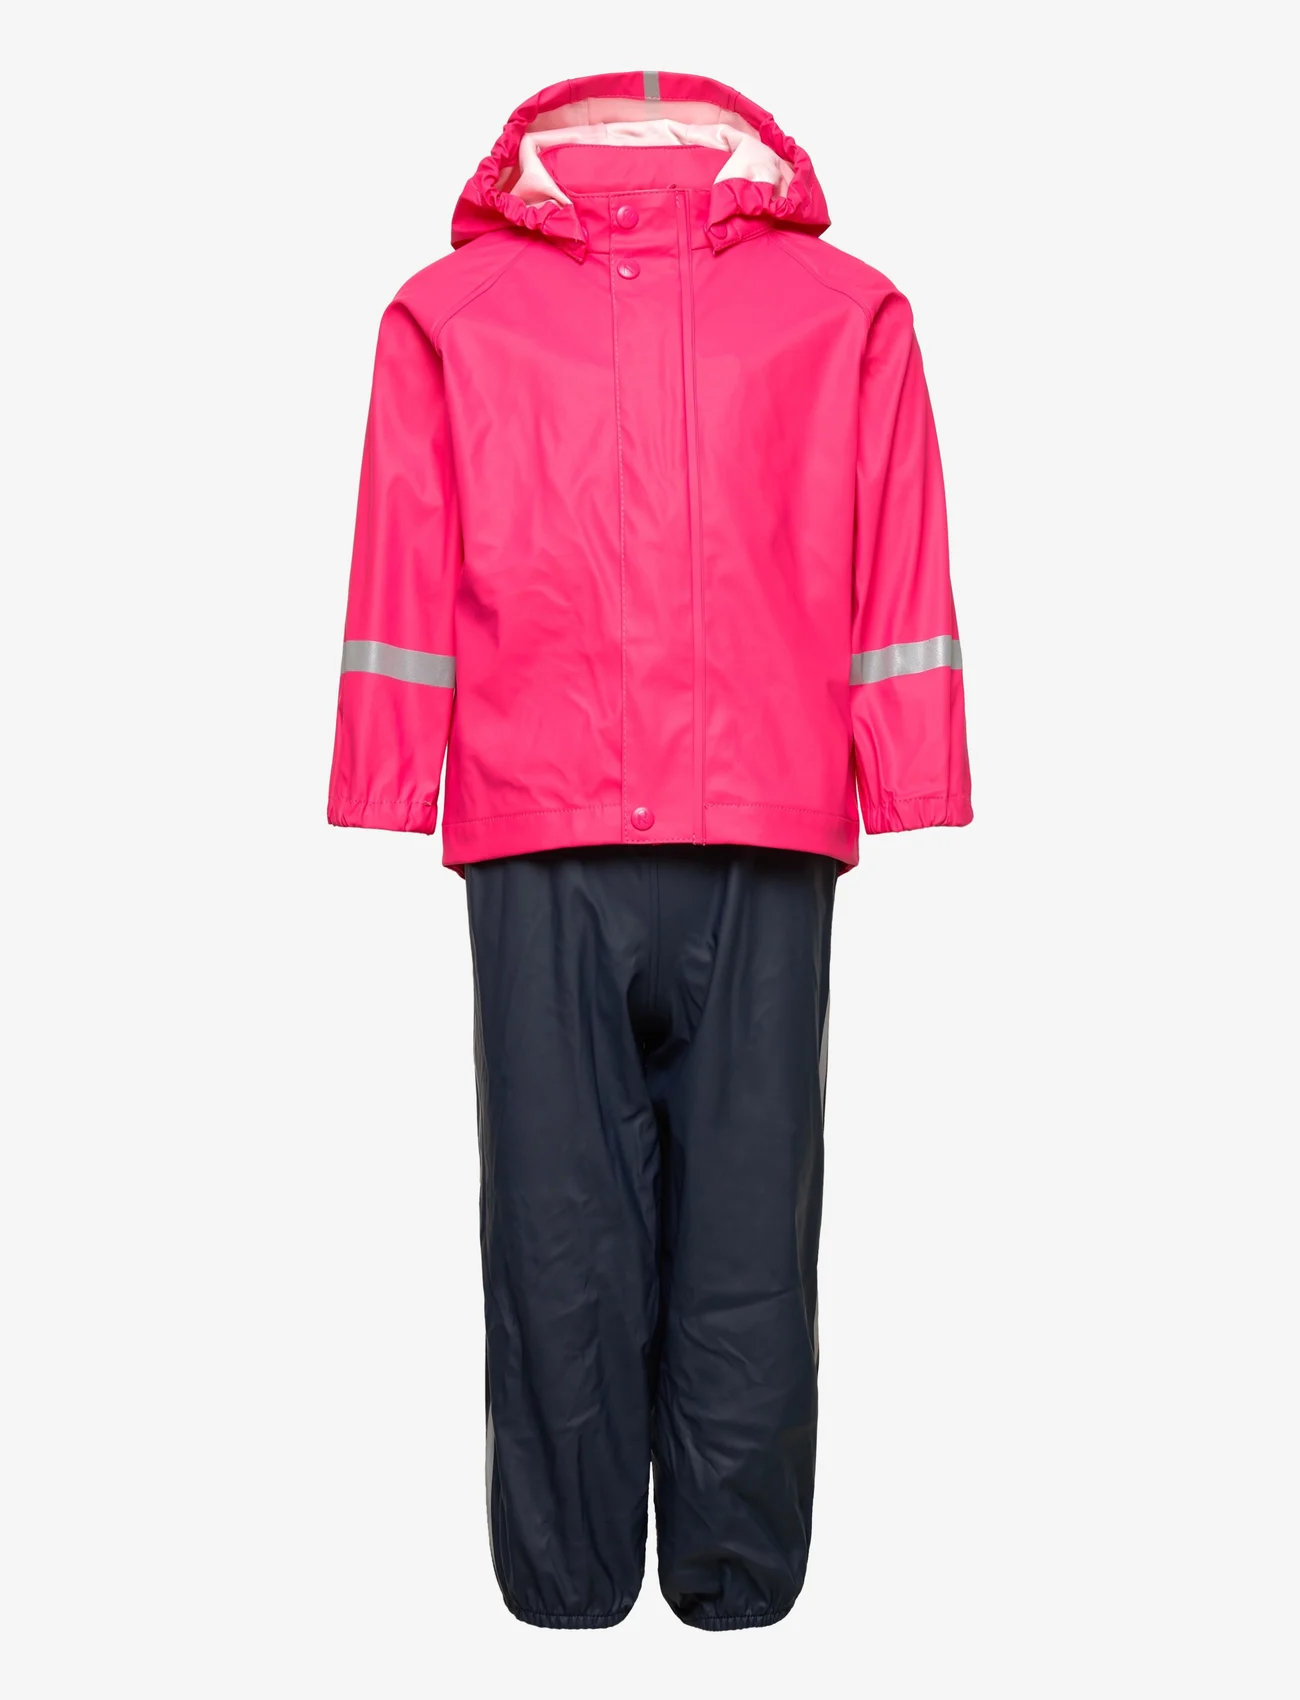 Reima - Rain outfit, Tihku - regnsæt - candy pink - 0